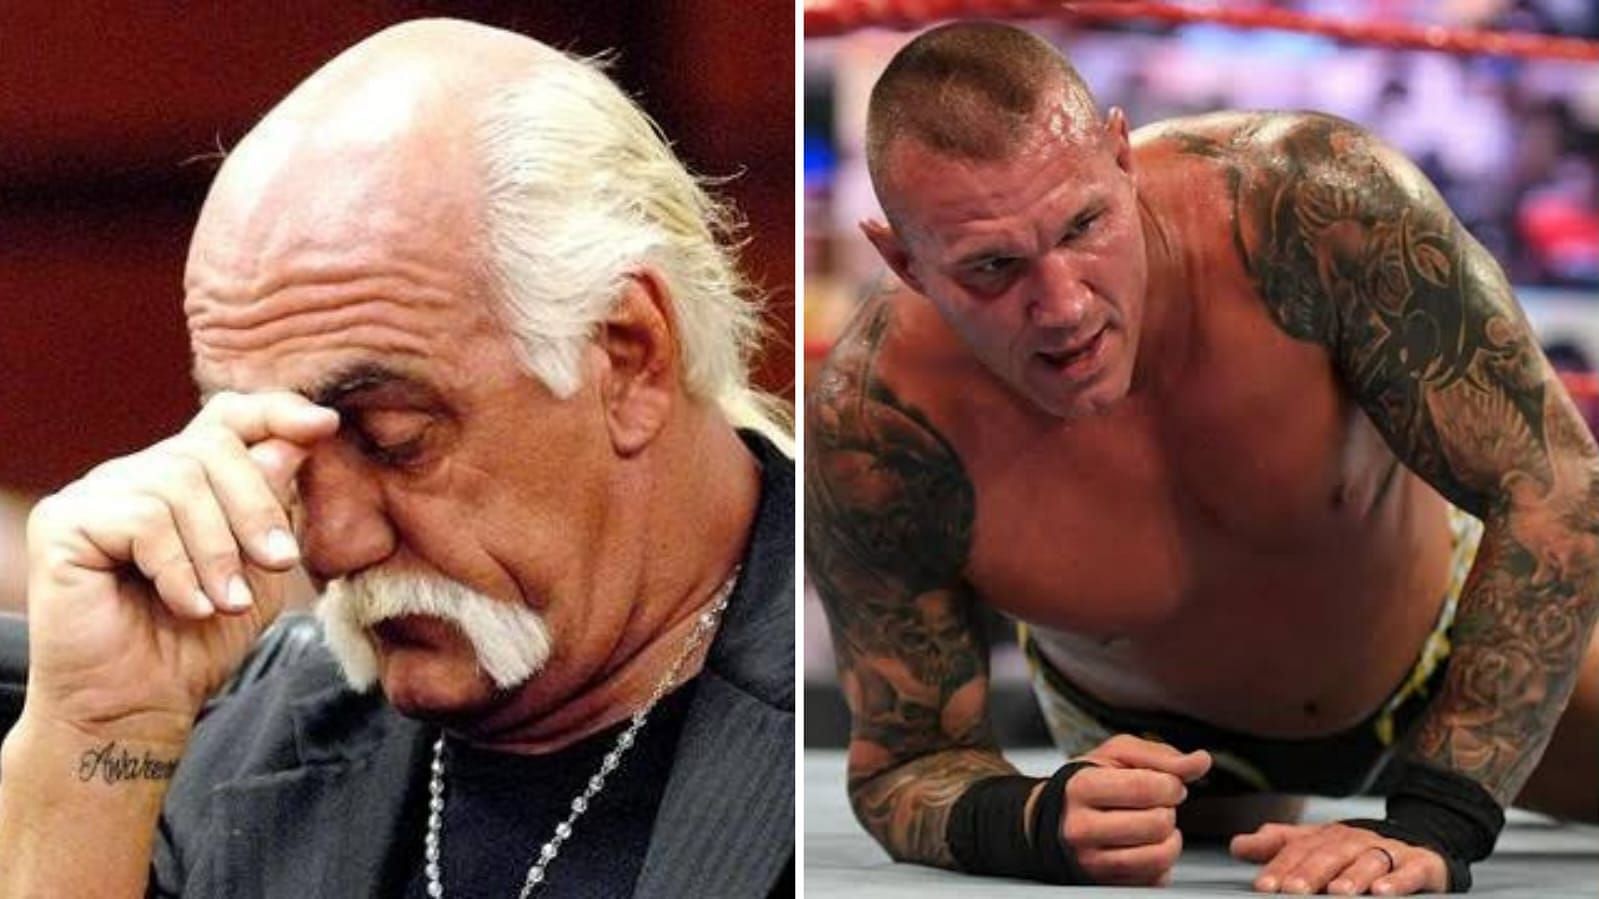 Hulk Hogan and Randy Orton went to war at SummerSlam 2006.